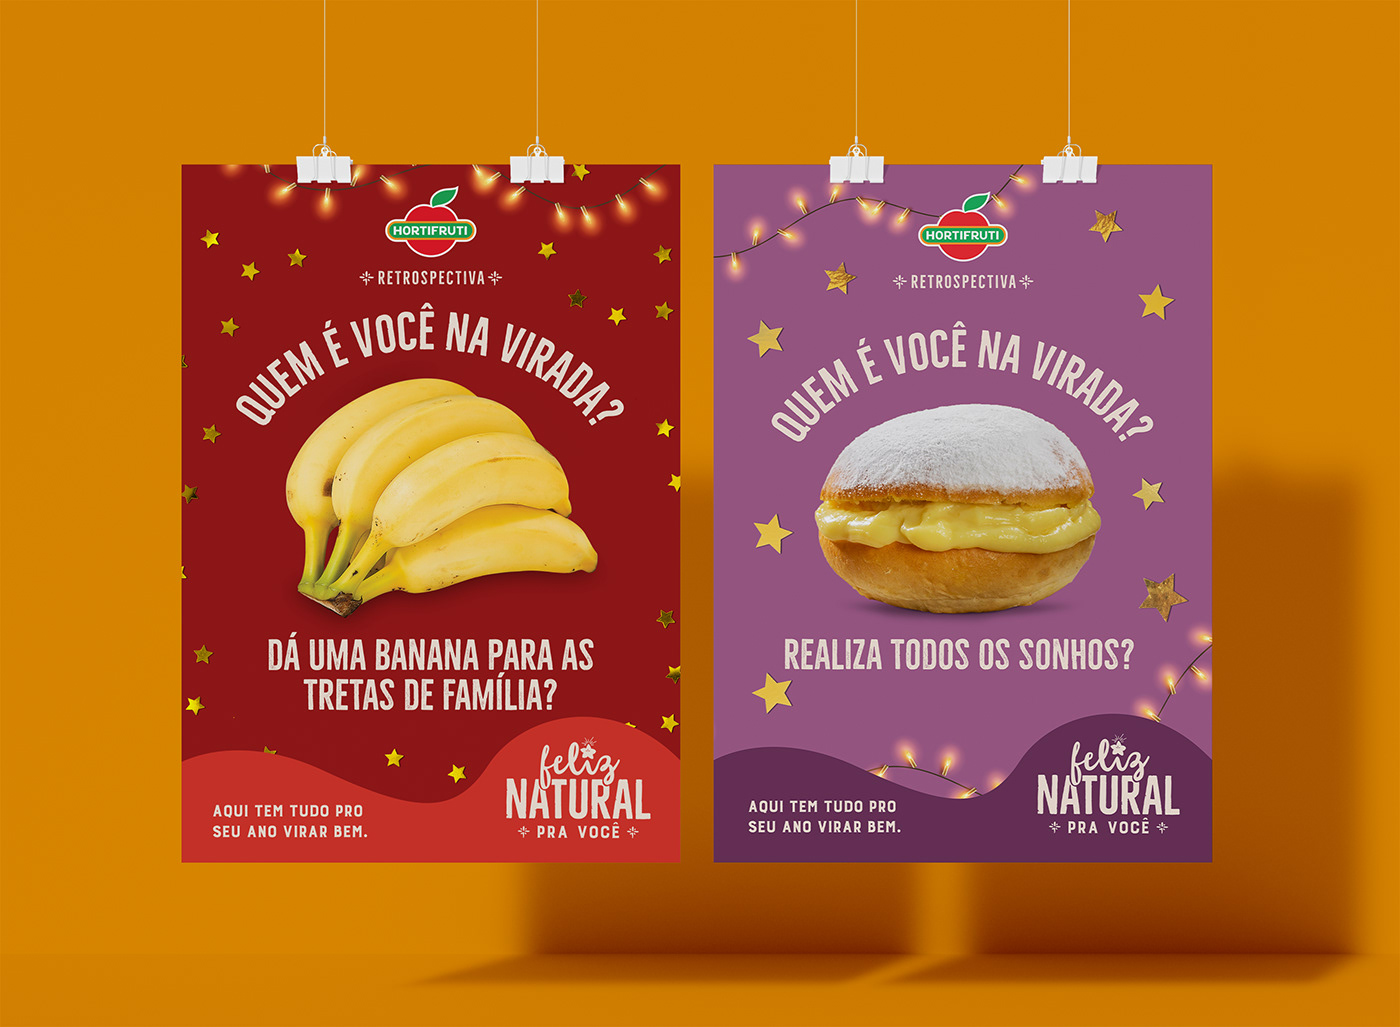 new year celebration campaign Advertising  ano novo reveillon fim de ano boas festas supermercado Food 